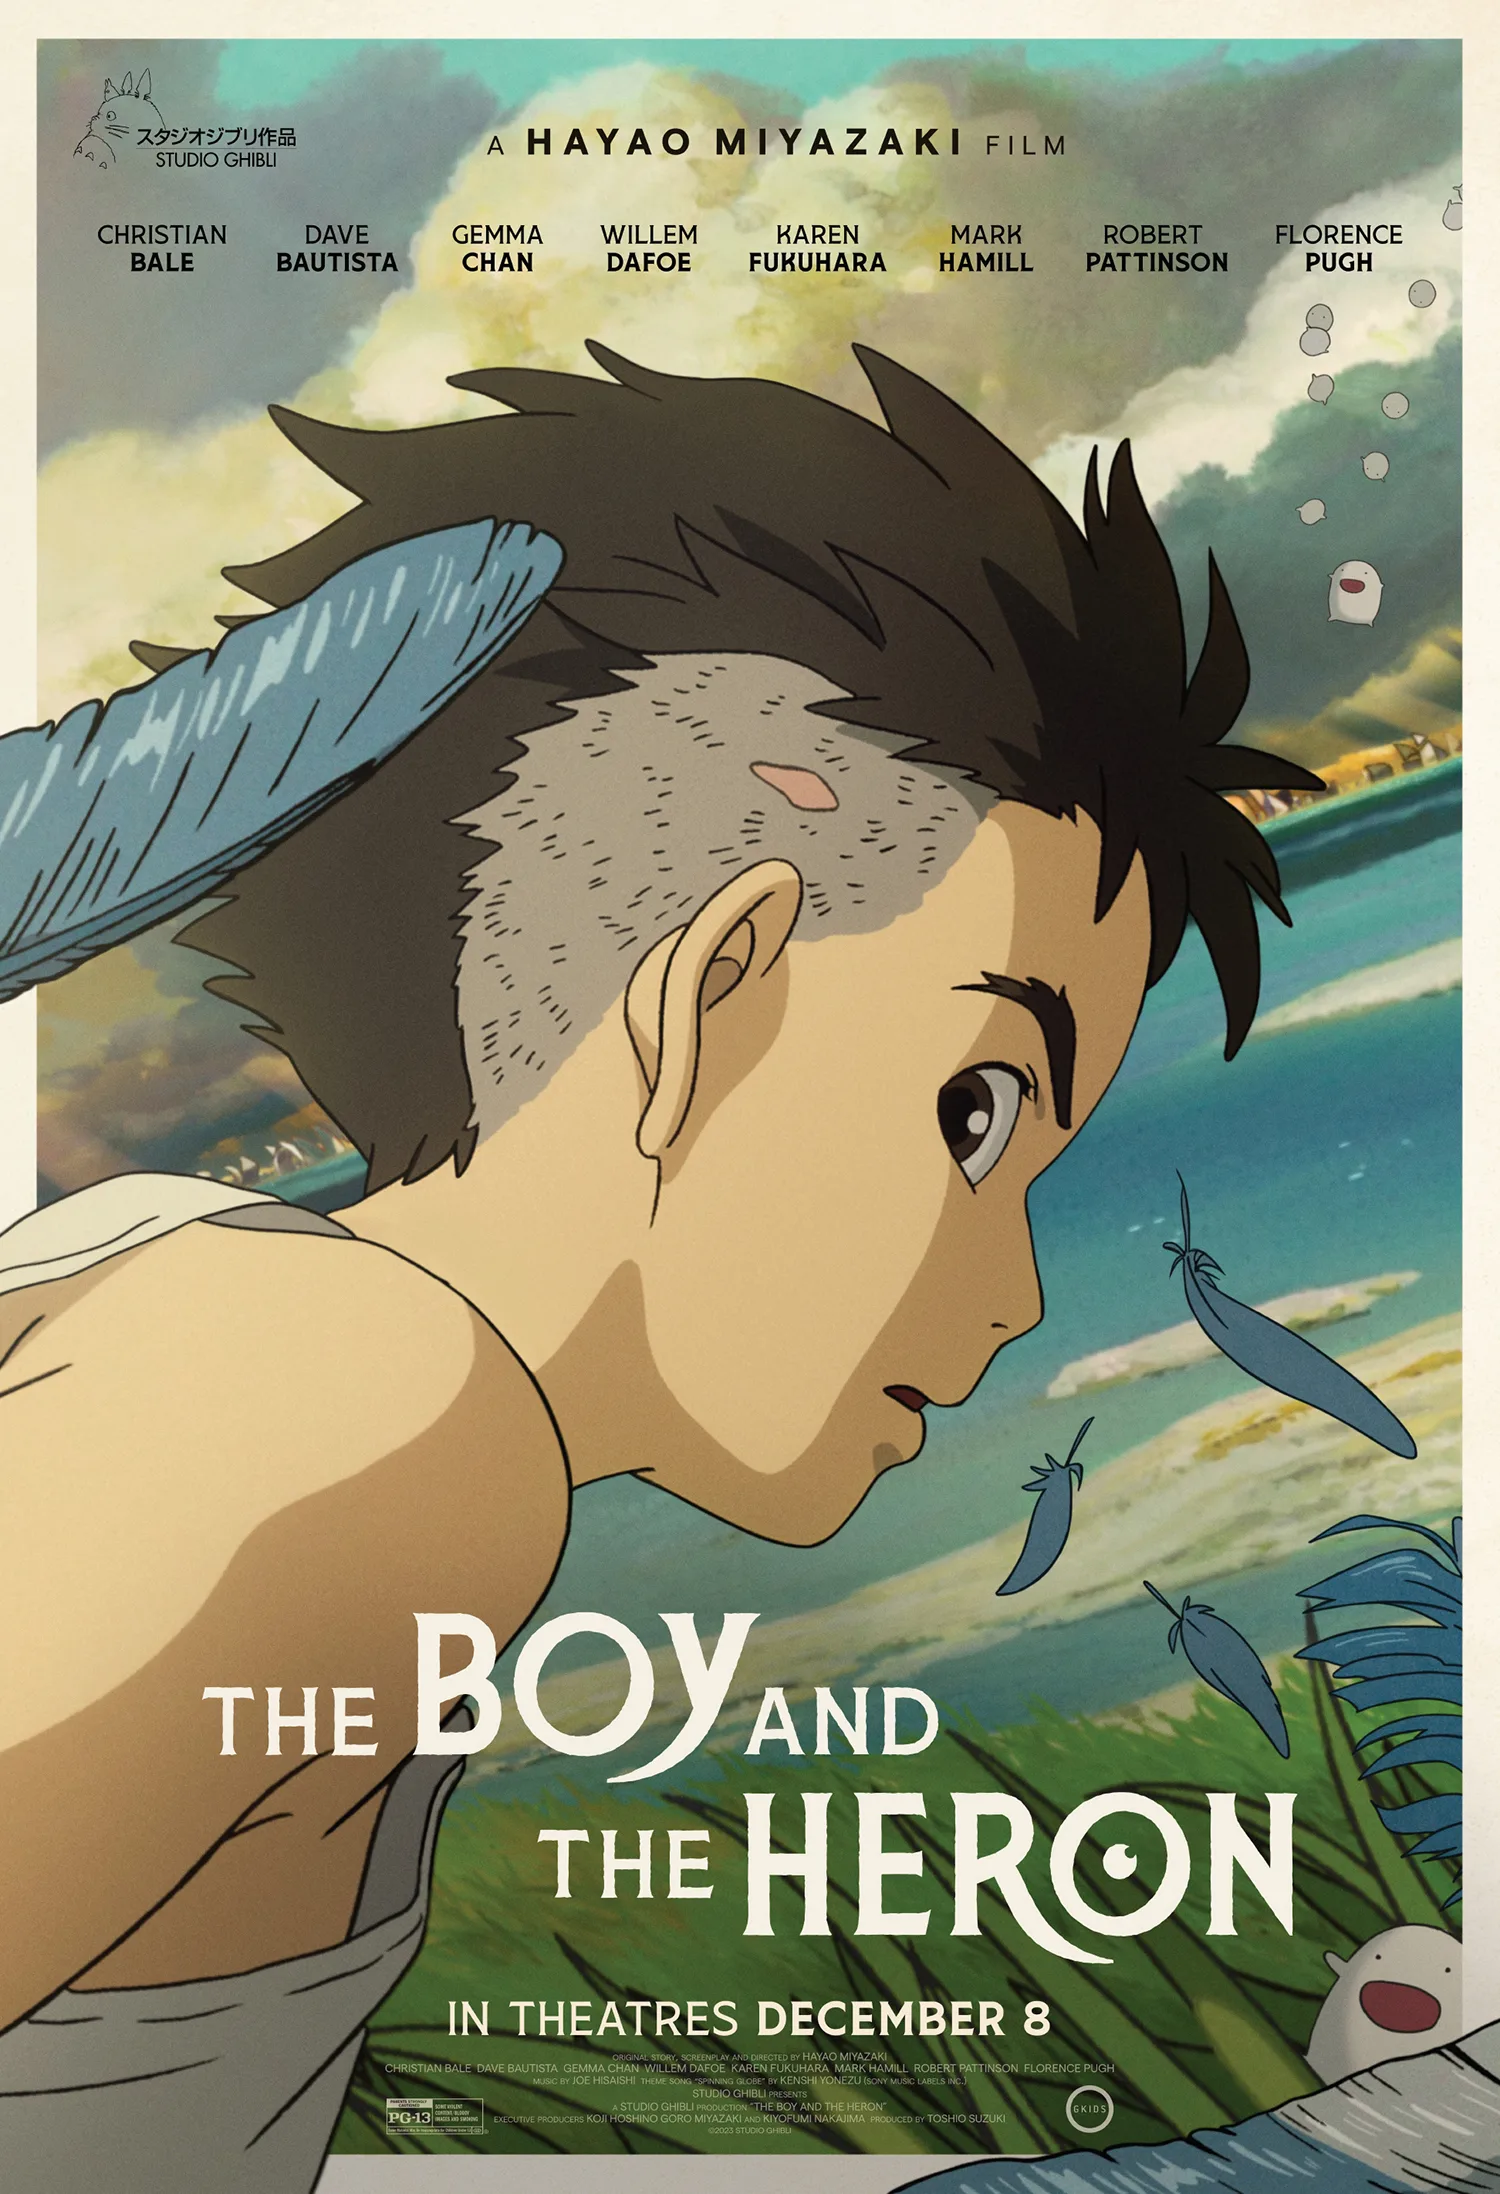 The Boy and the Heron - Filme tem nova arte revelada - AnimeNew